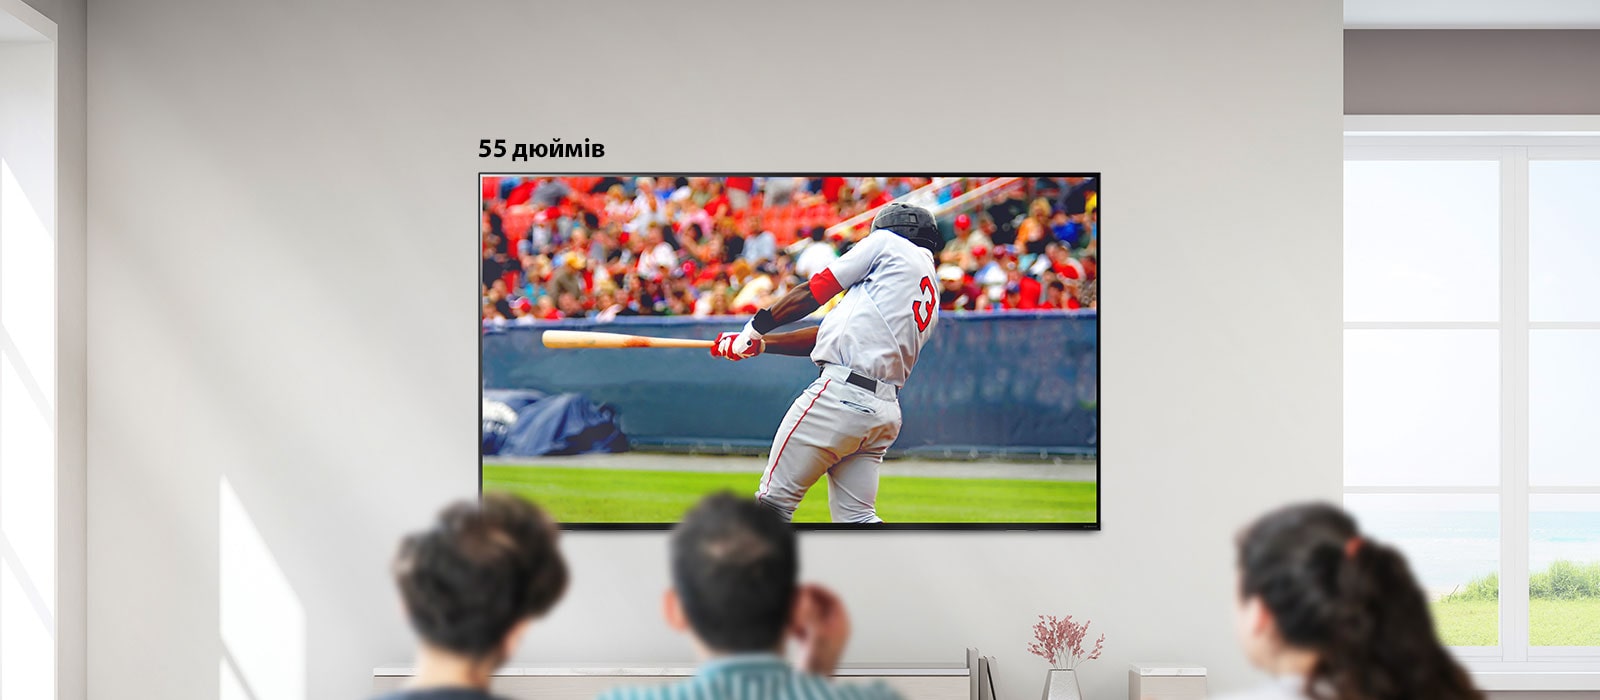 Зображення, на якому показано трьох людей, що дивляться бейсбол на великому телевізорі на стіні. Під час прокручування зліва направо екран збільшується.